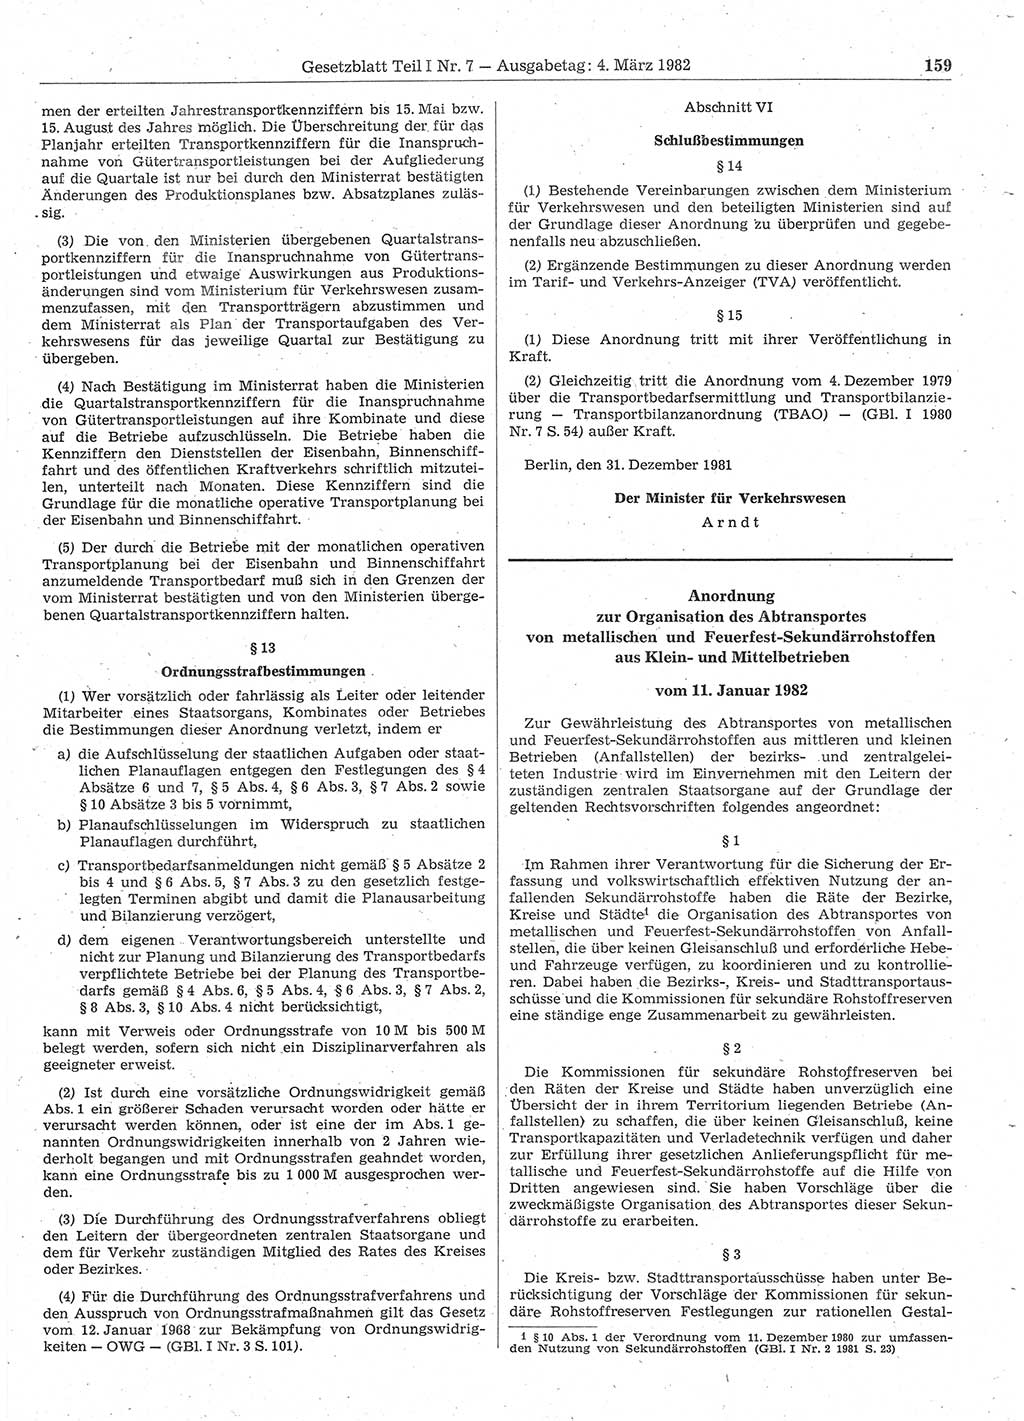 Gesetzblatt (GBl.) der Deutschen Demokratischen Republik (DDR) Teil Ⅰ 1982, Seite 159 (GBl. DDR Ⅰ 1982, S. 159)